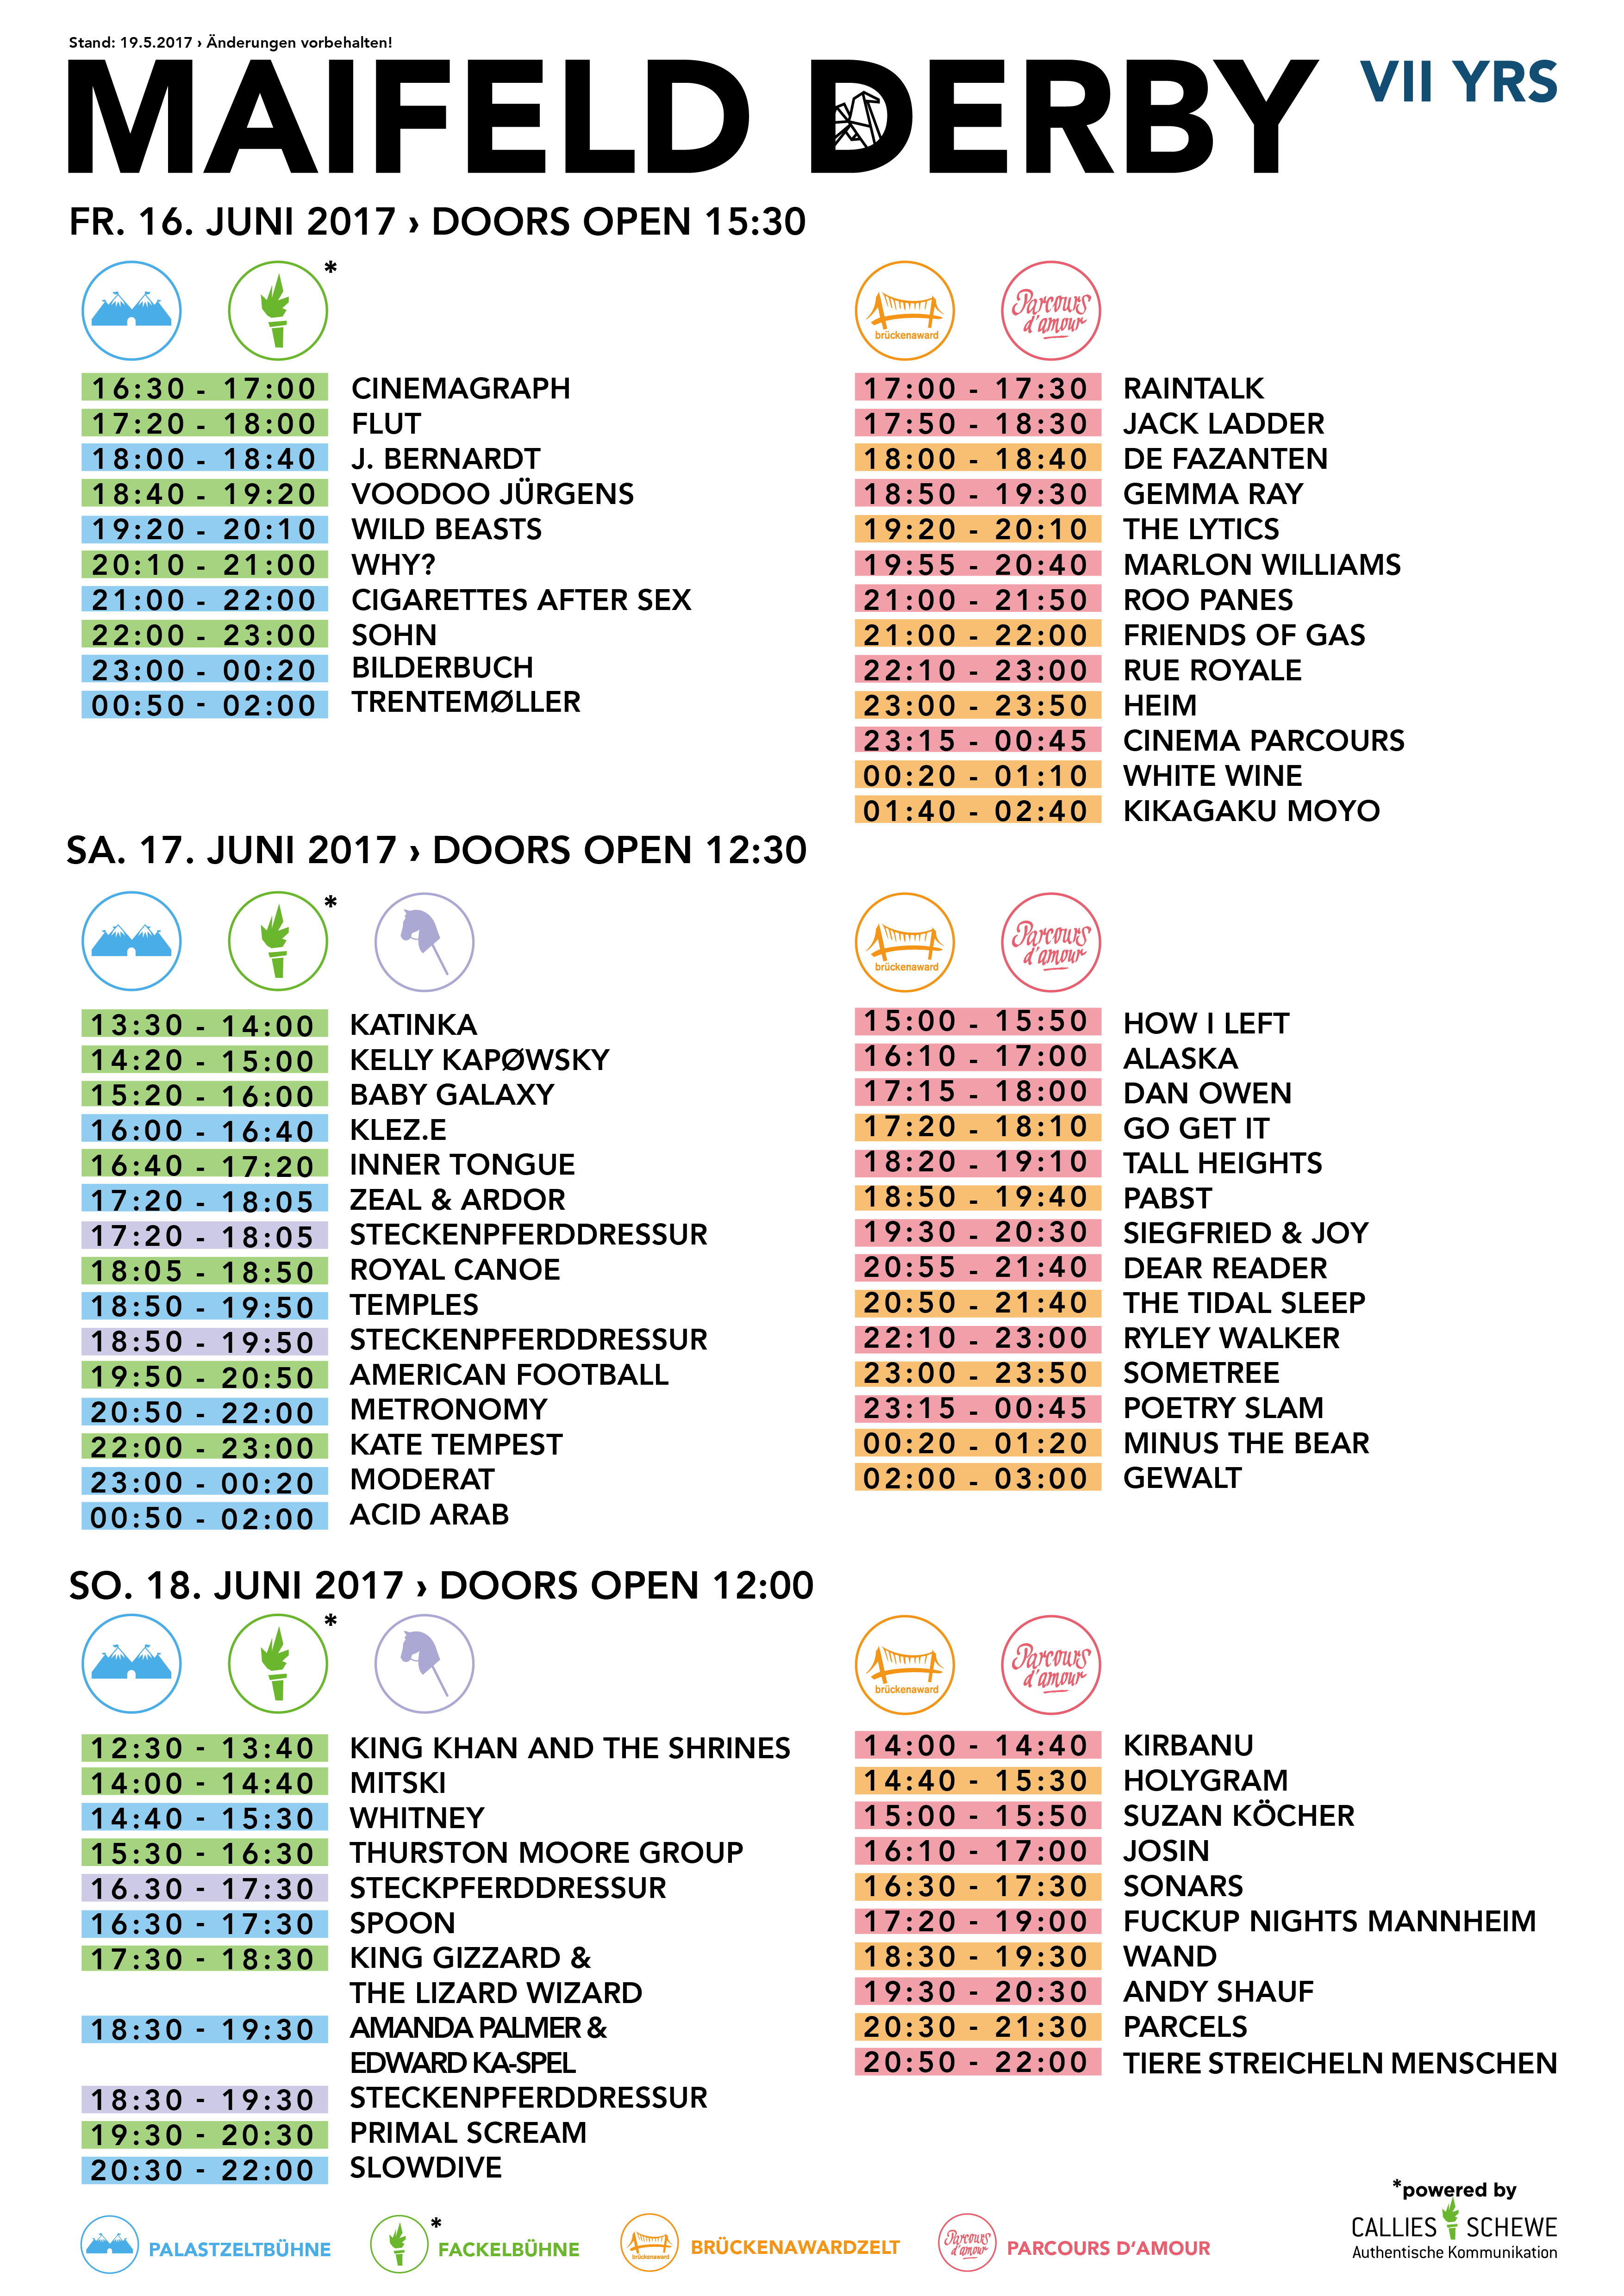 MD17_Grafik_Timetable_20170511.png